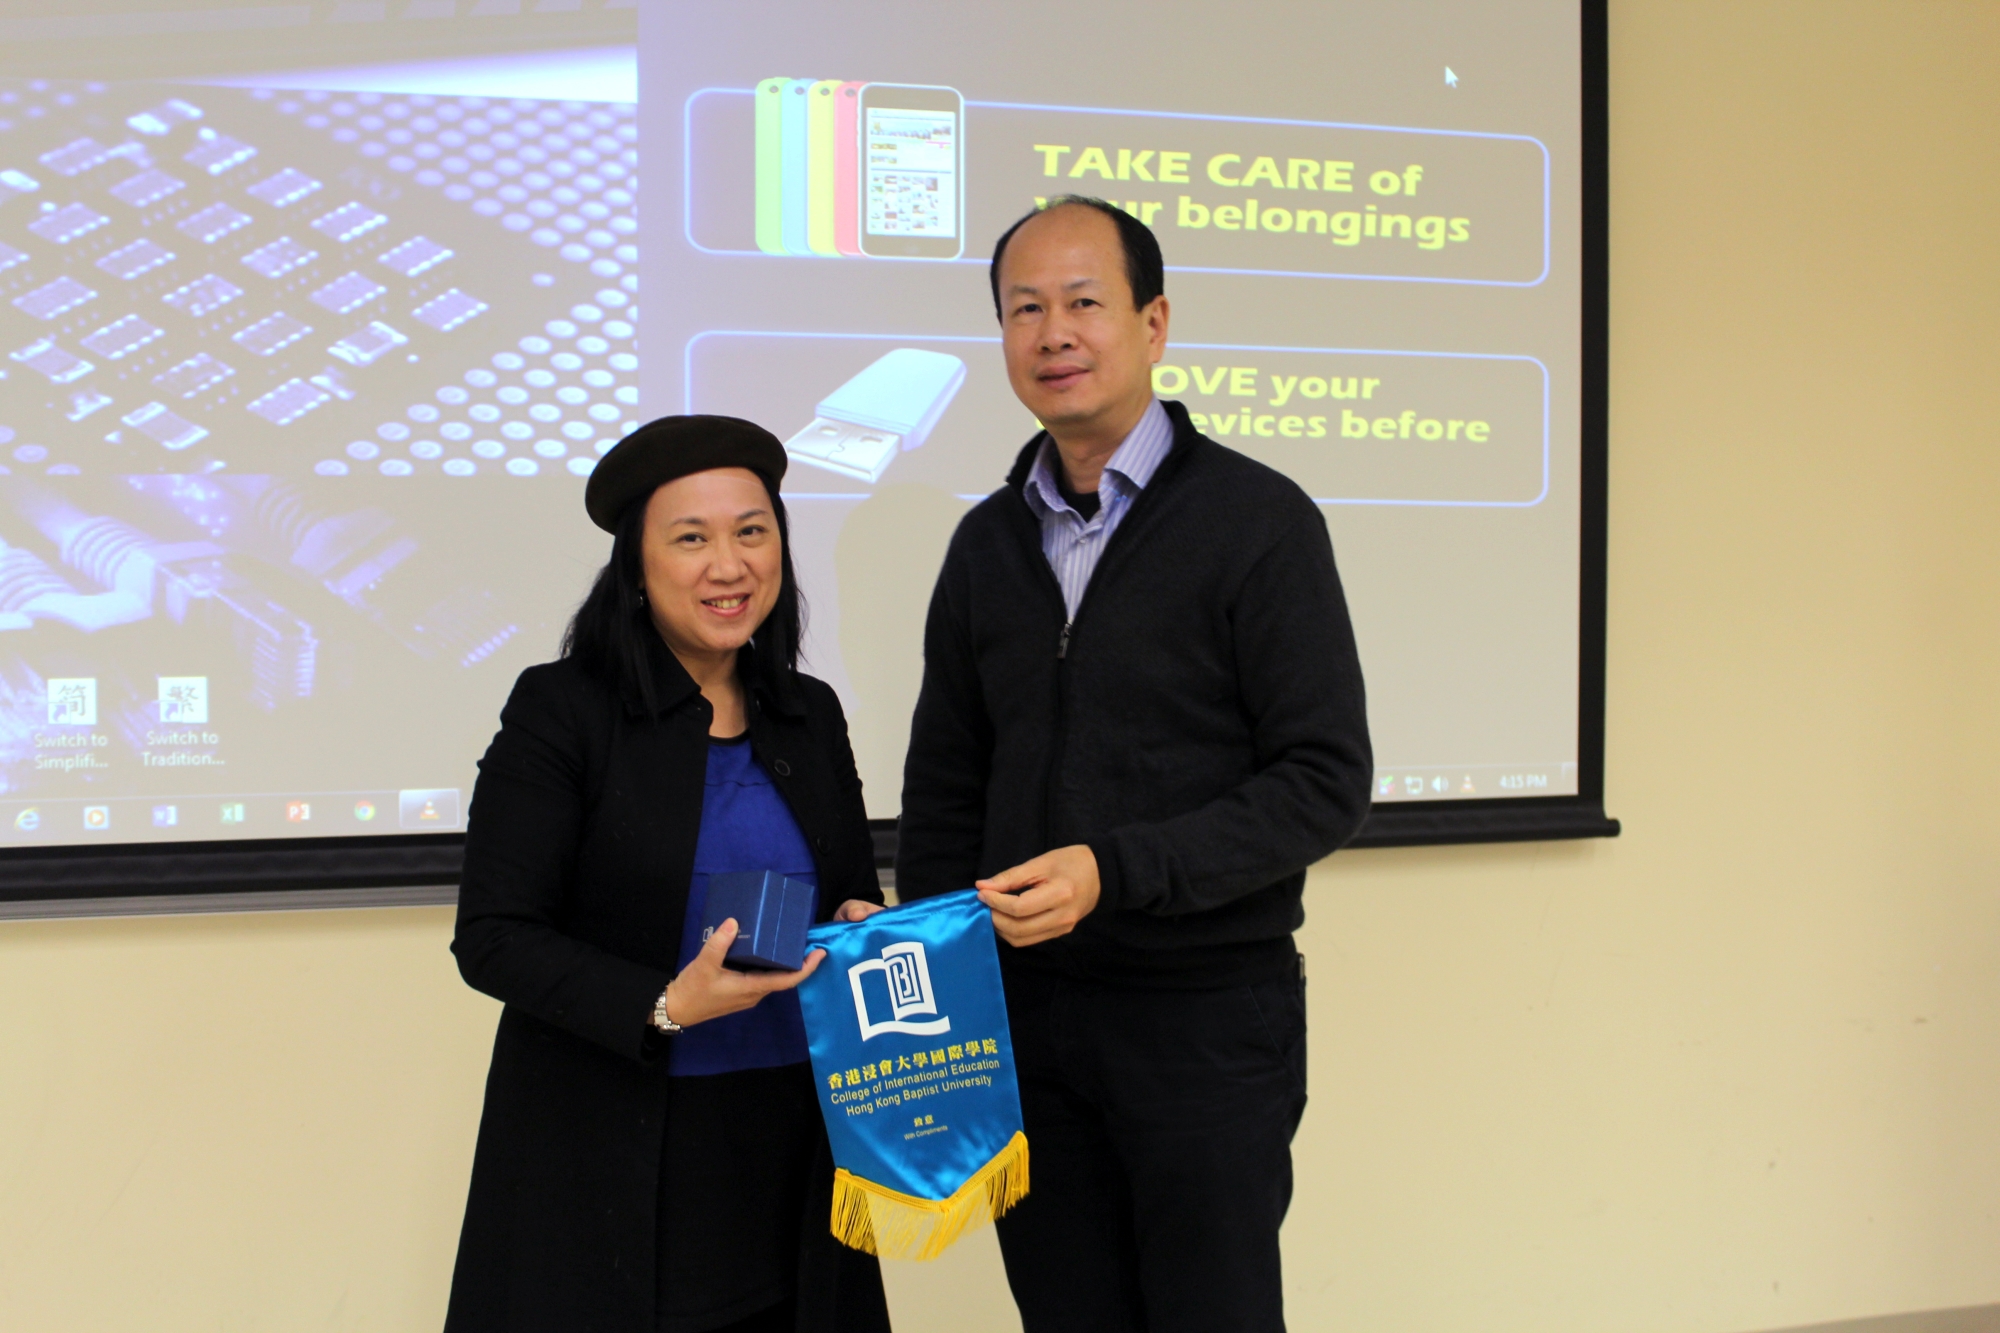 國際學院副總監梁萬如博士（右）致送紀念品予主講嘉賓阮小清女士（左）。